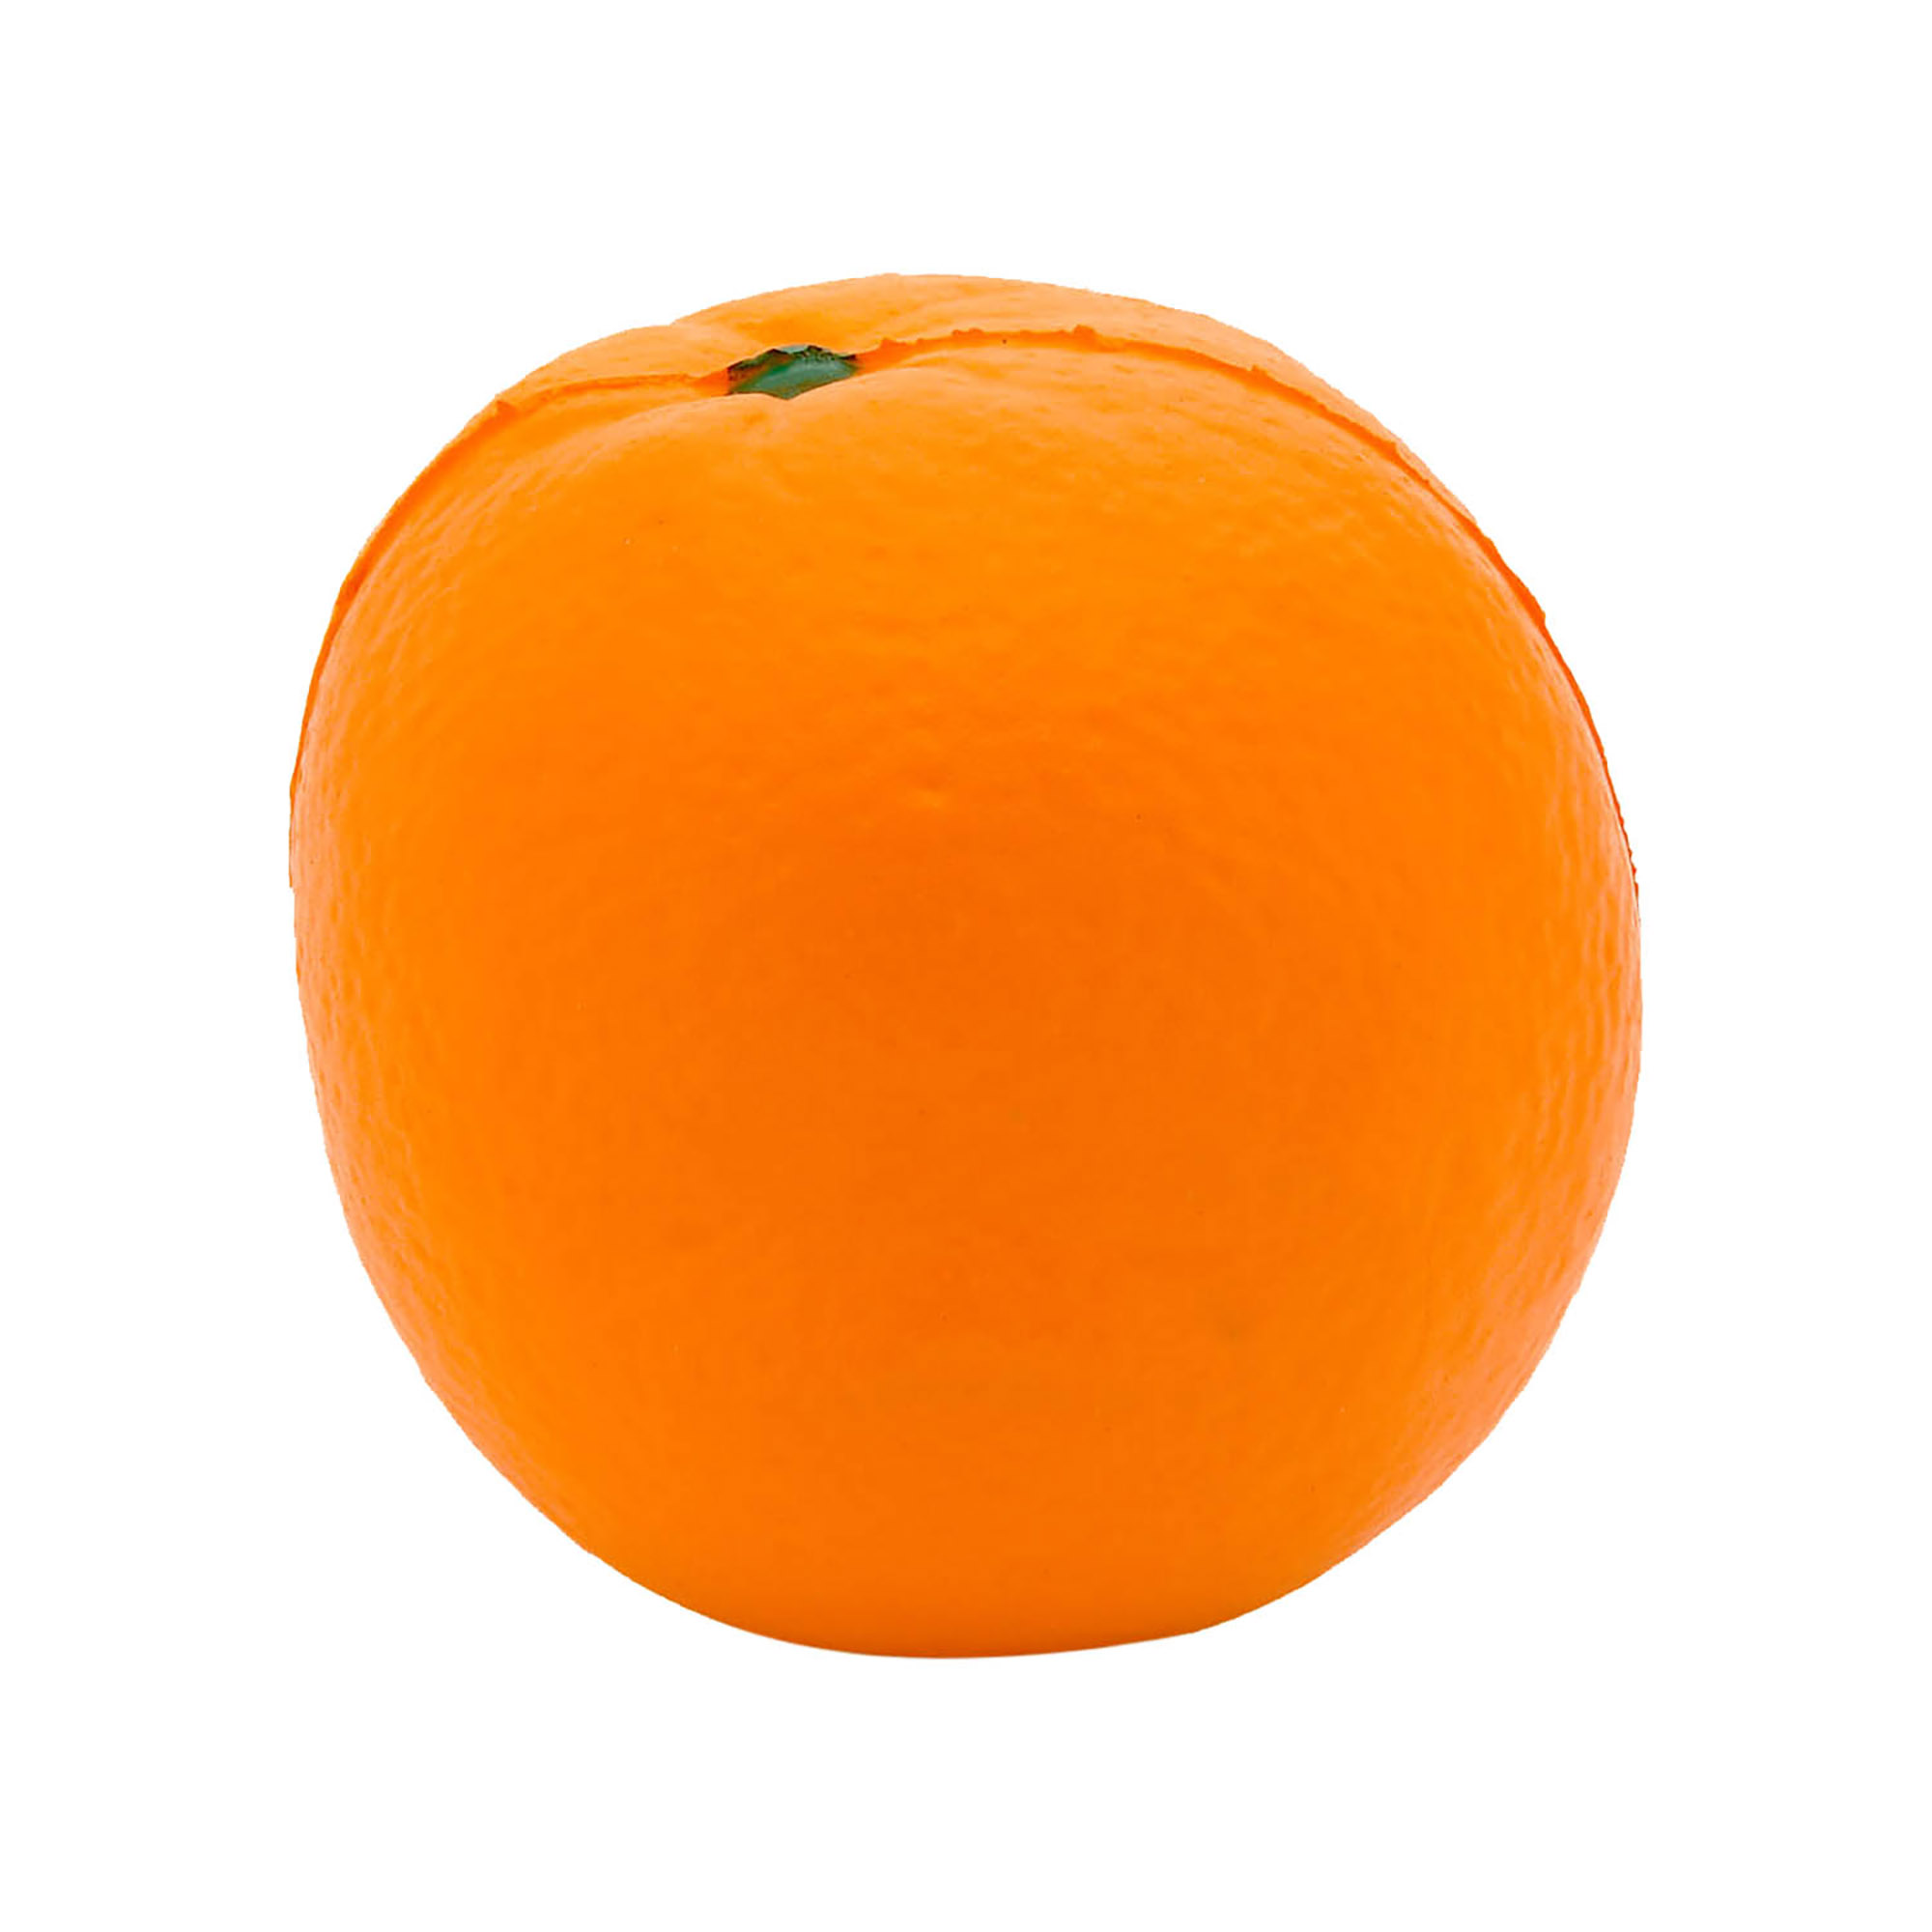 Stress Orange